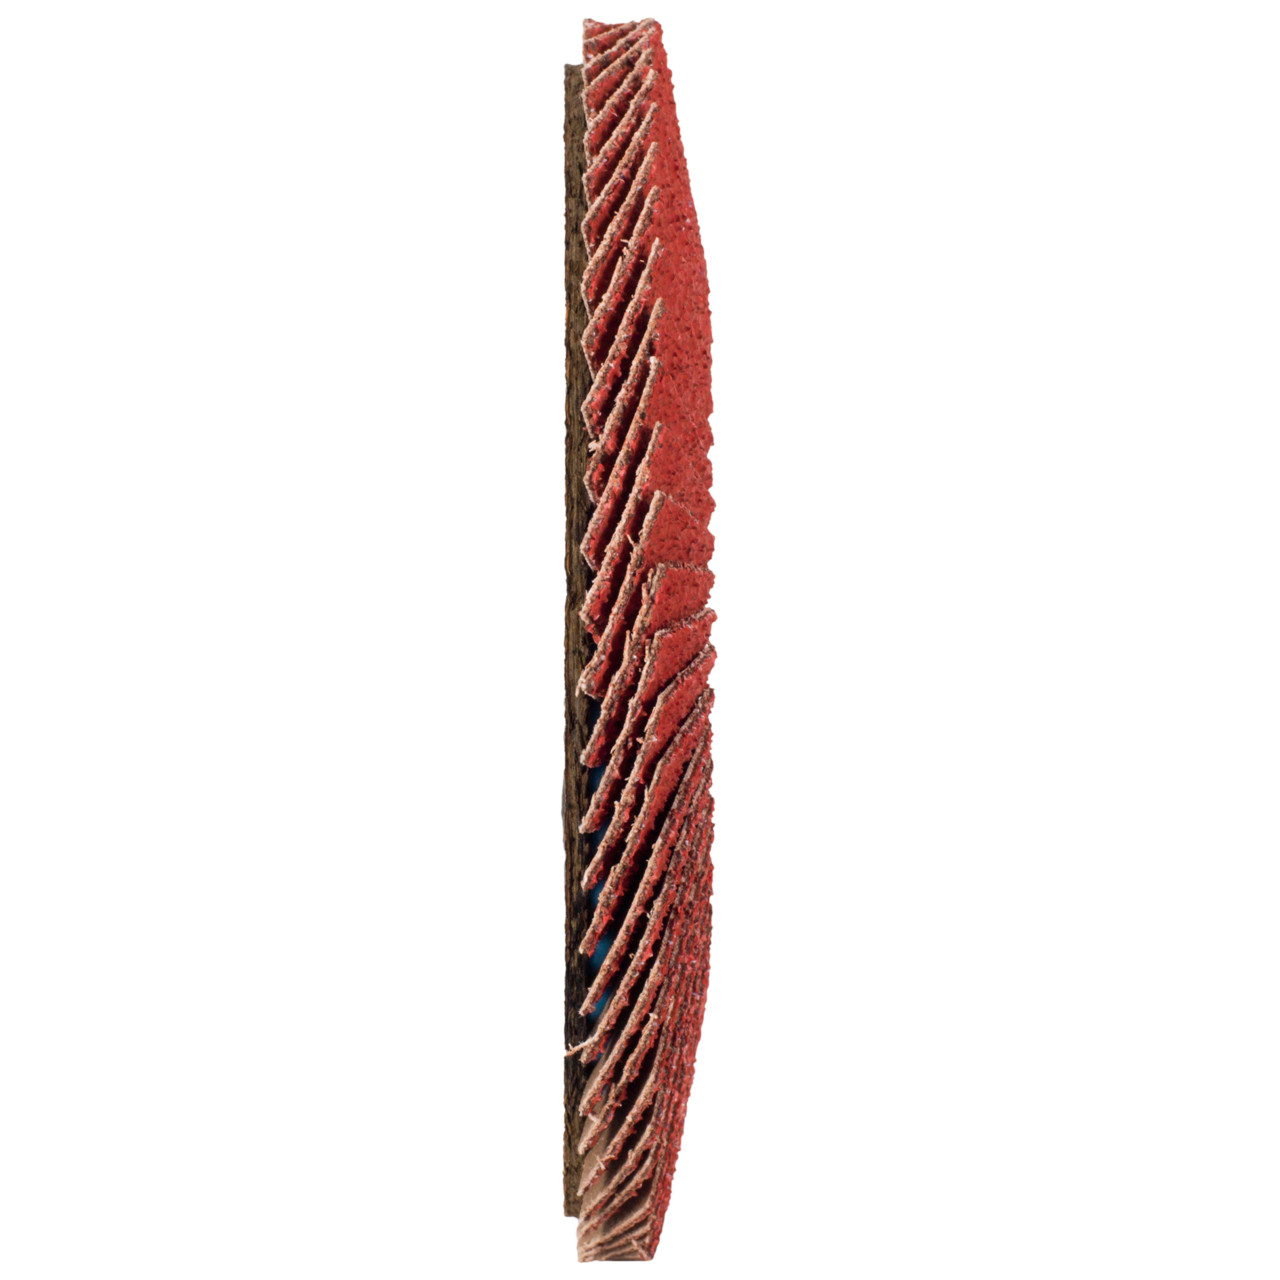 Tyrolit Rondelle éventail DxH 150x22,23 CERABOND Rondelle éventail pour acier inoxydable, P60, forme : 28A - modèle droit (modèle à corps en fibre de verre), Art. 34166179